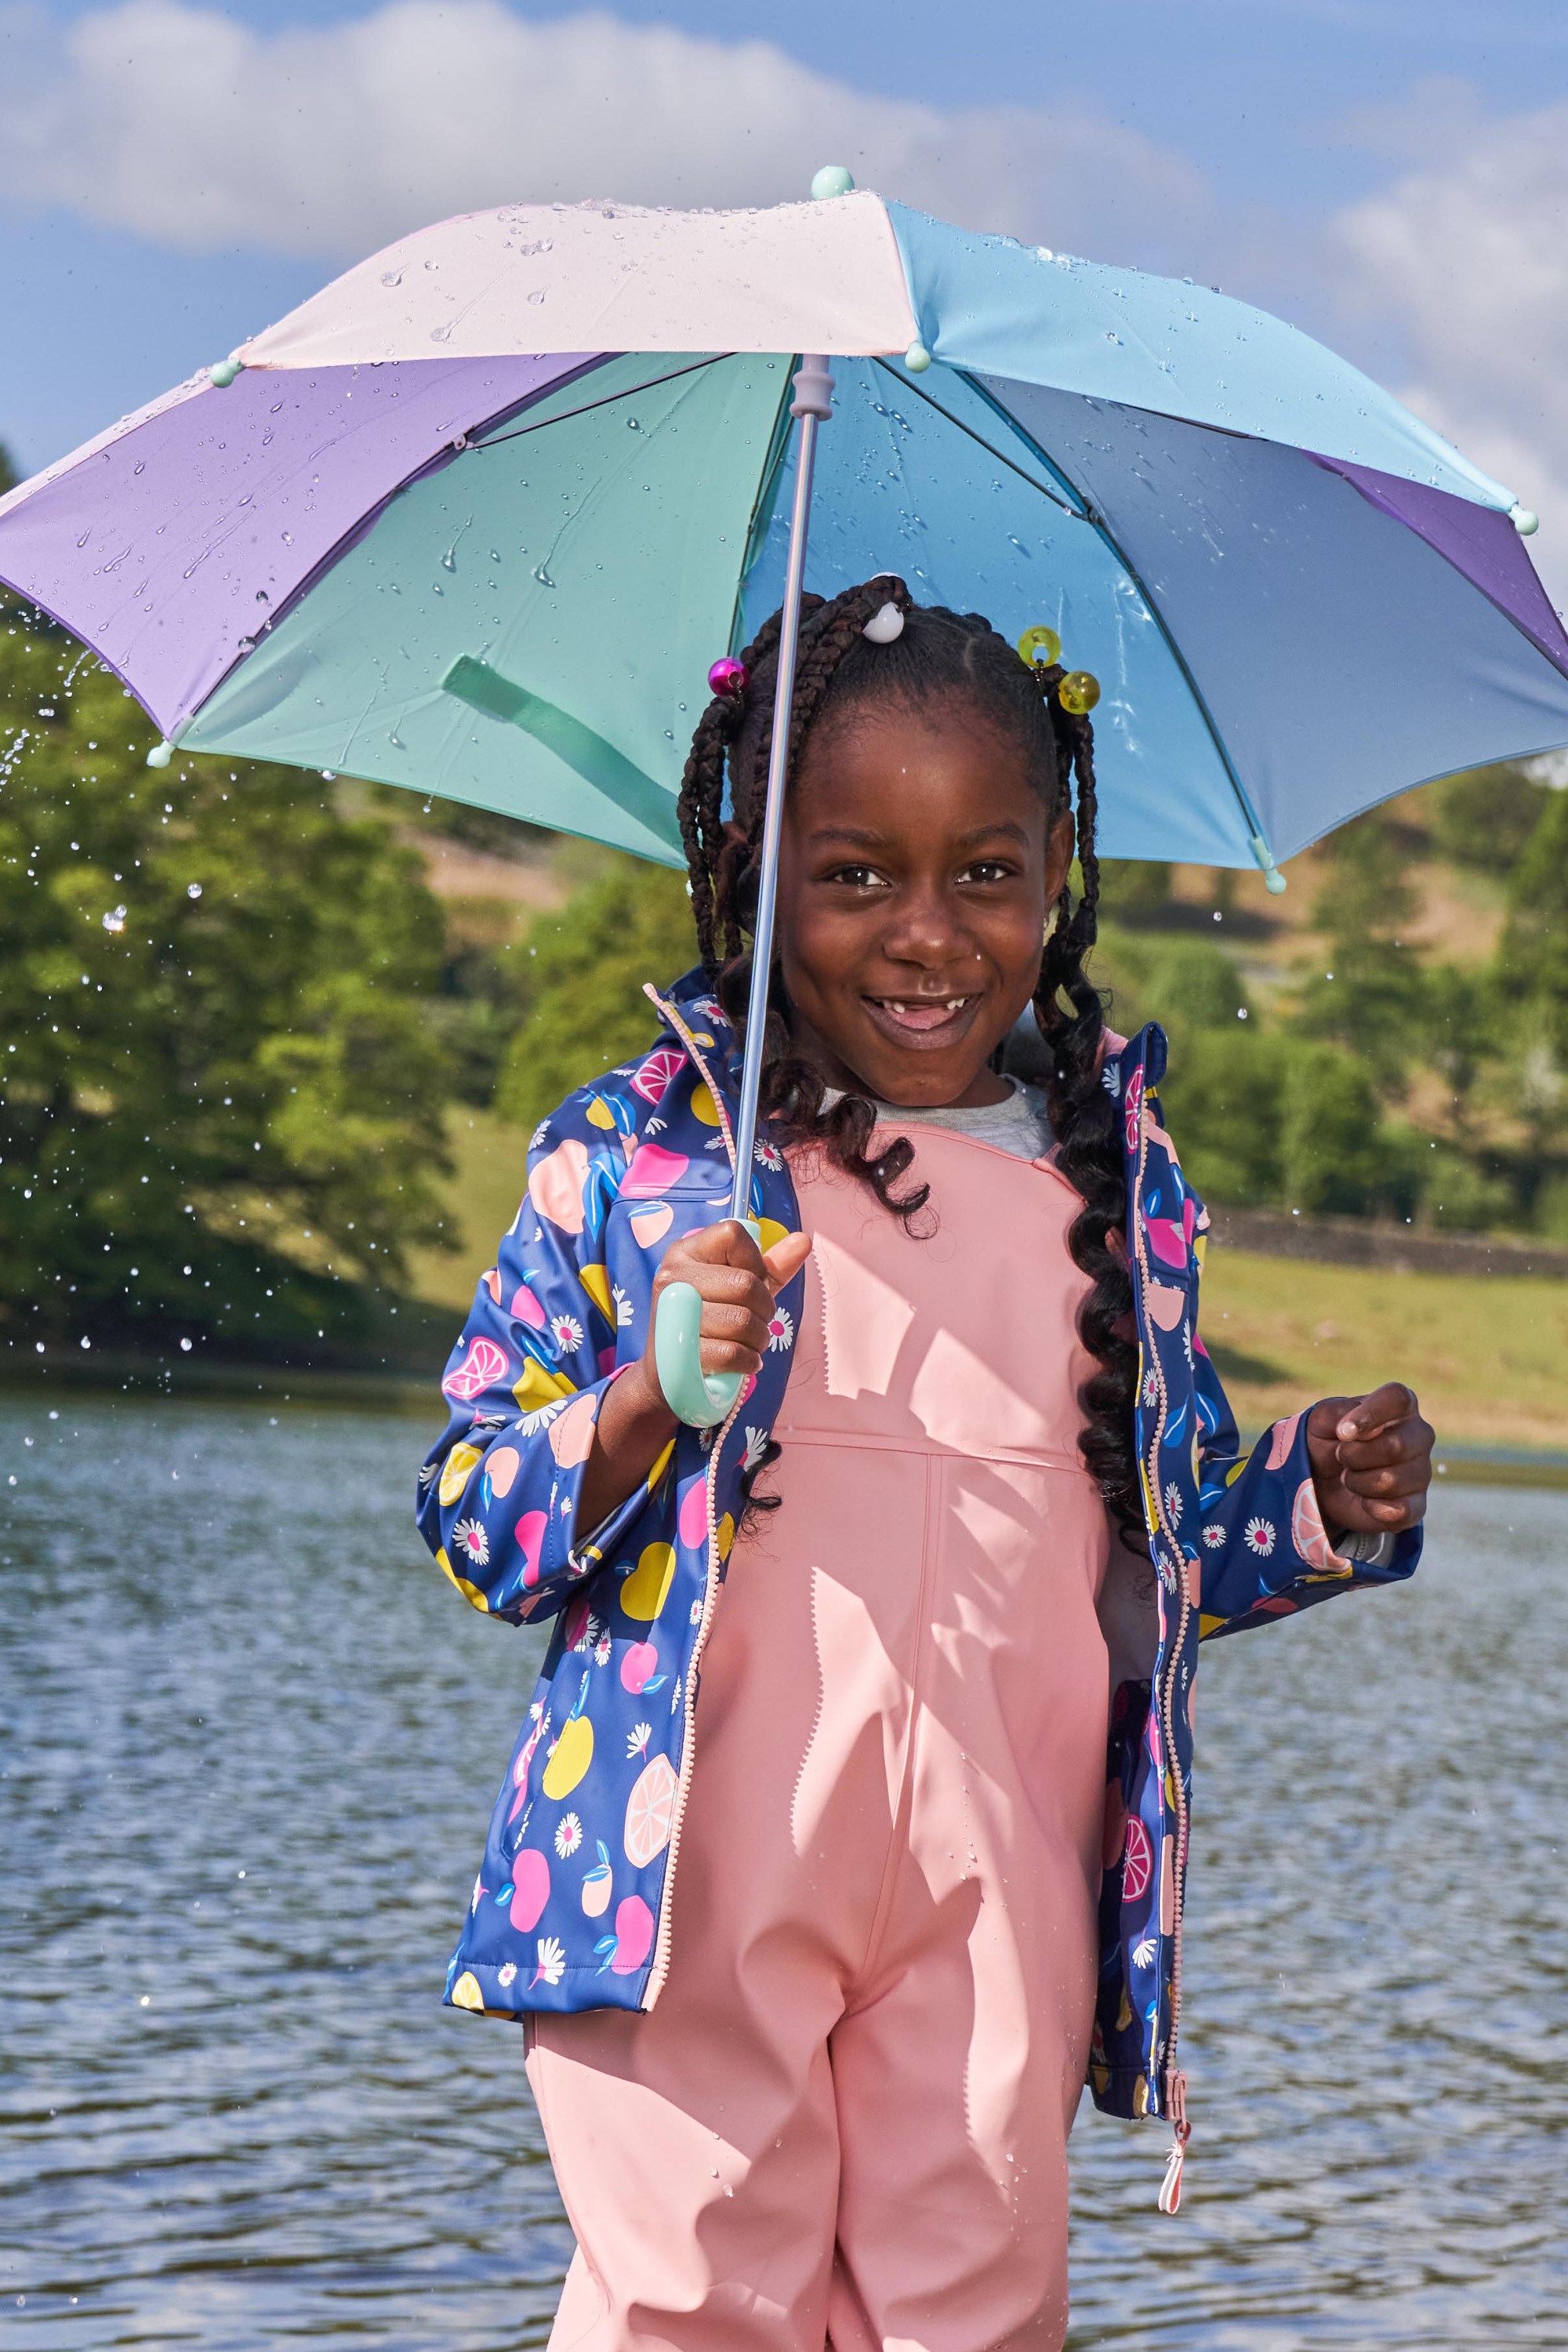  Wildkin Paraguas para niños y niñas, cuenta con toldo  impermeable y mango curvado para colgar fácilmente, sin BPA (corazones  arcoíris) : Ropa, Zapatos y Joyería